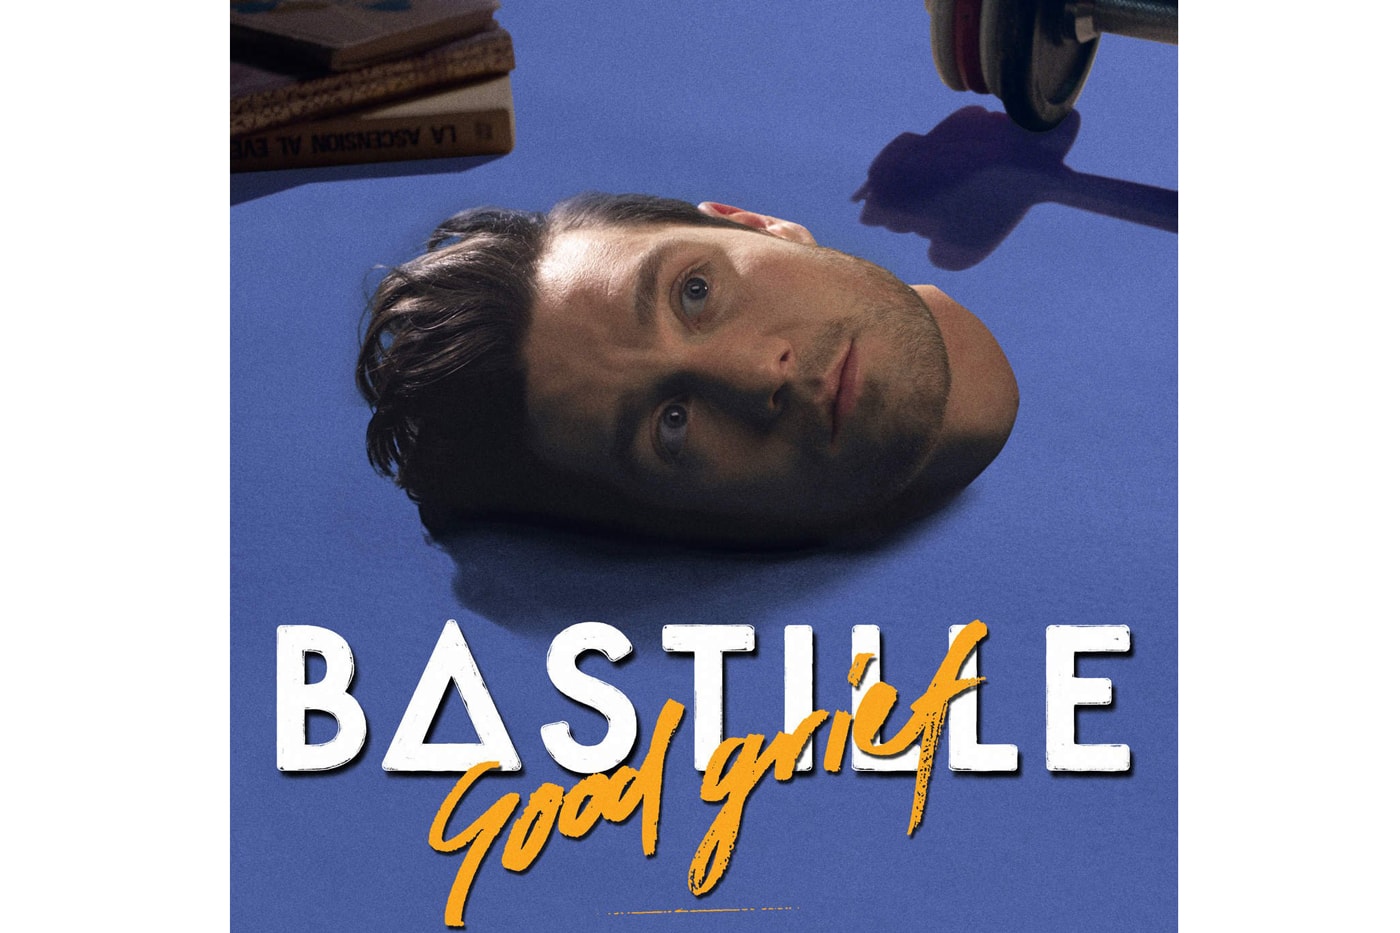 bastille-good-grief